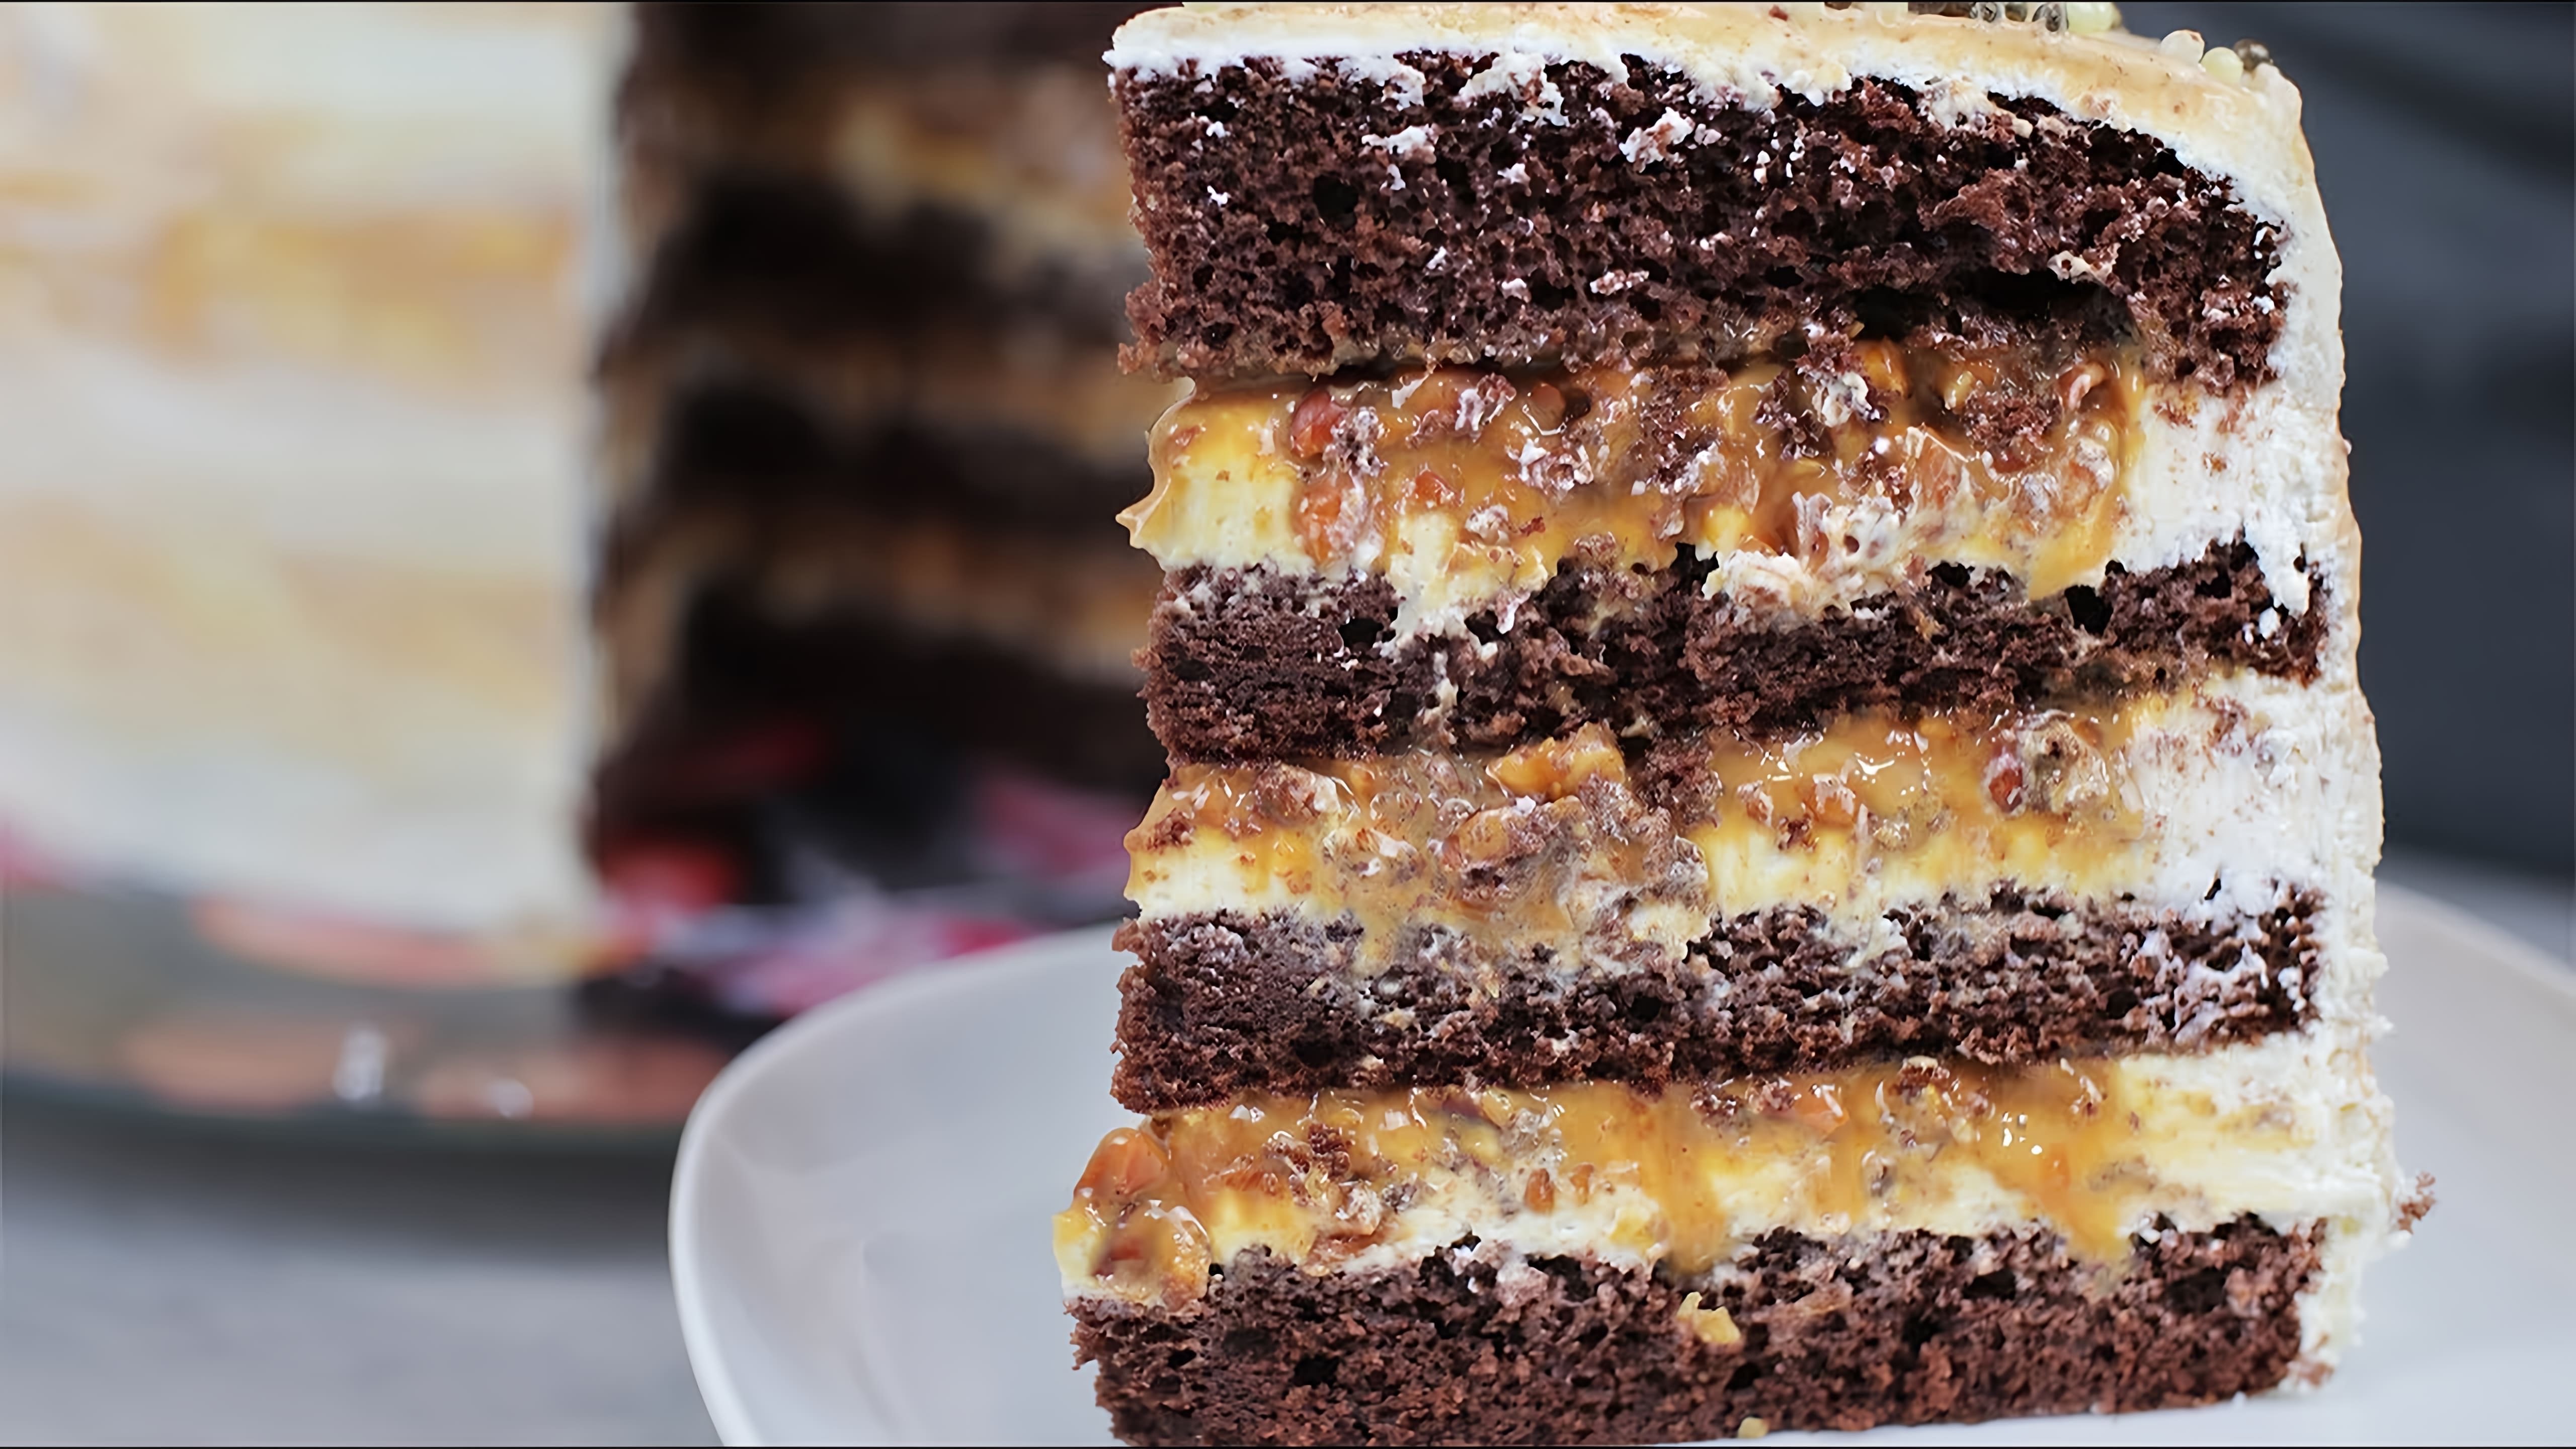 В этом видео демонстрируется рецепт приготовления торта "Сникерс" на День Рождения